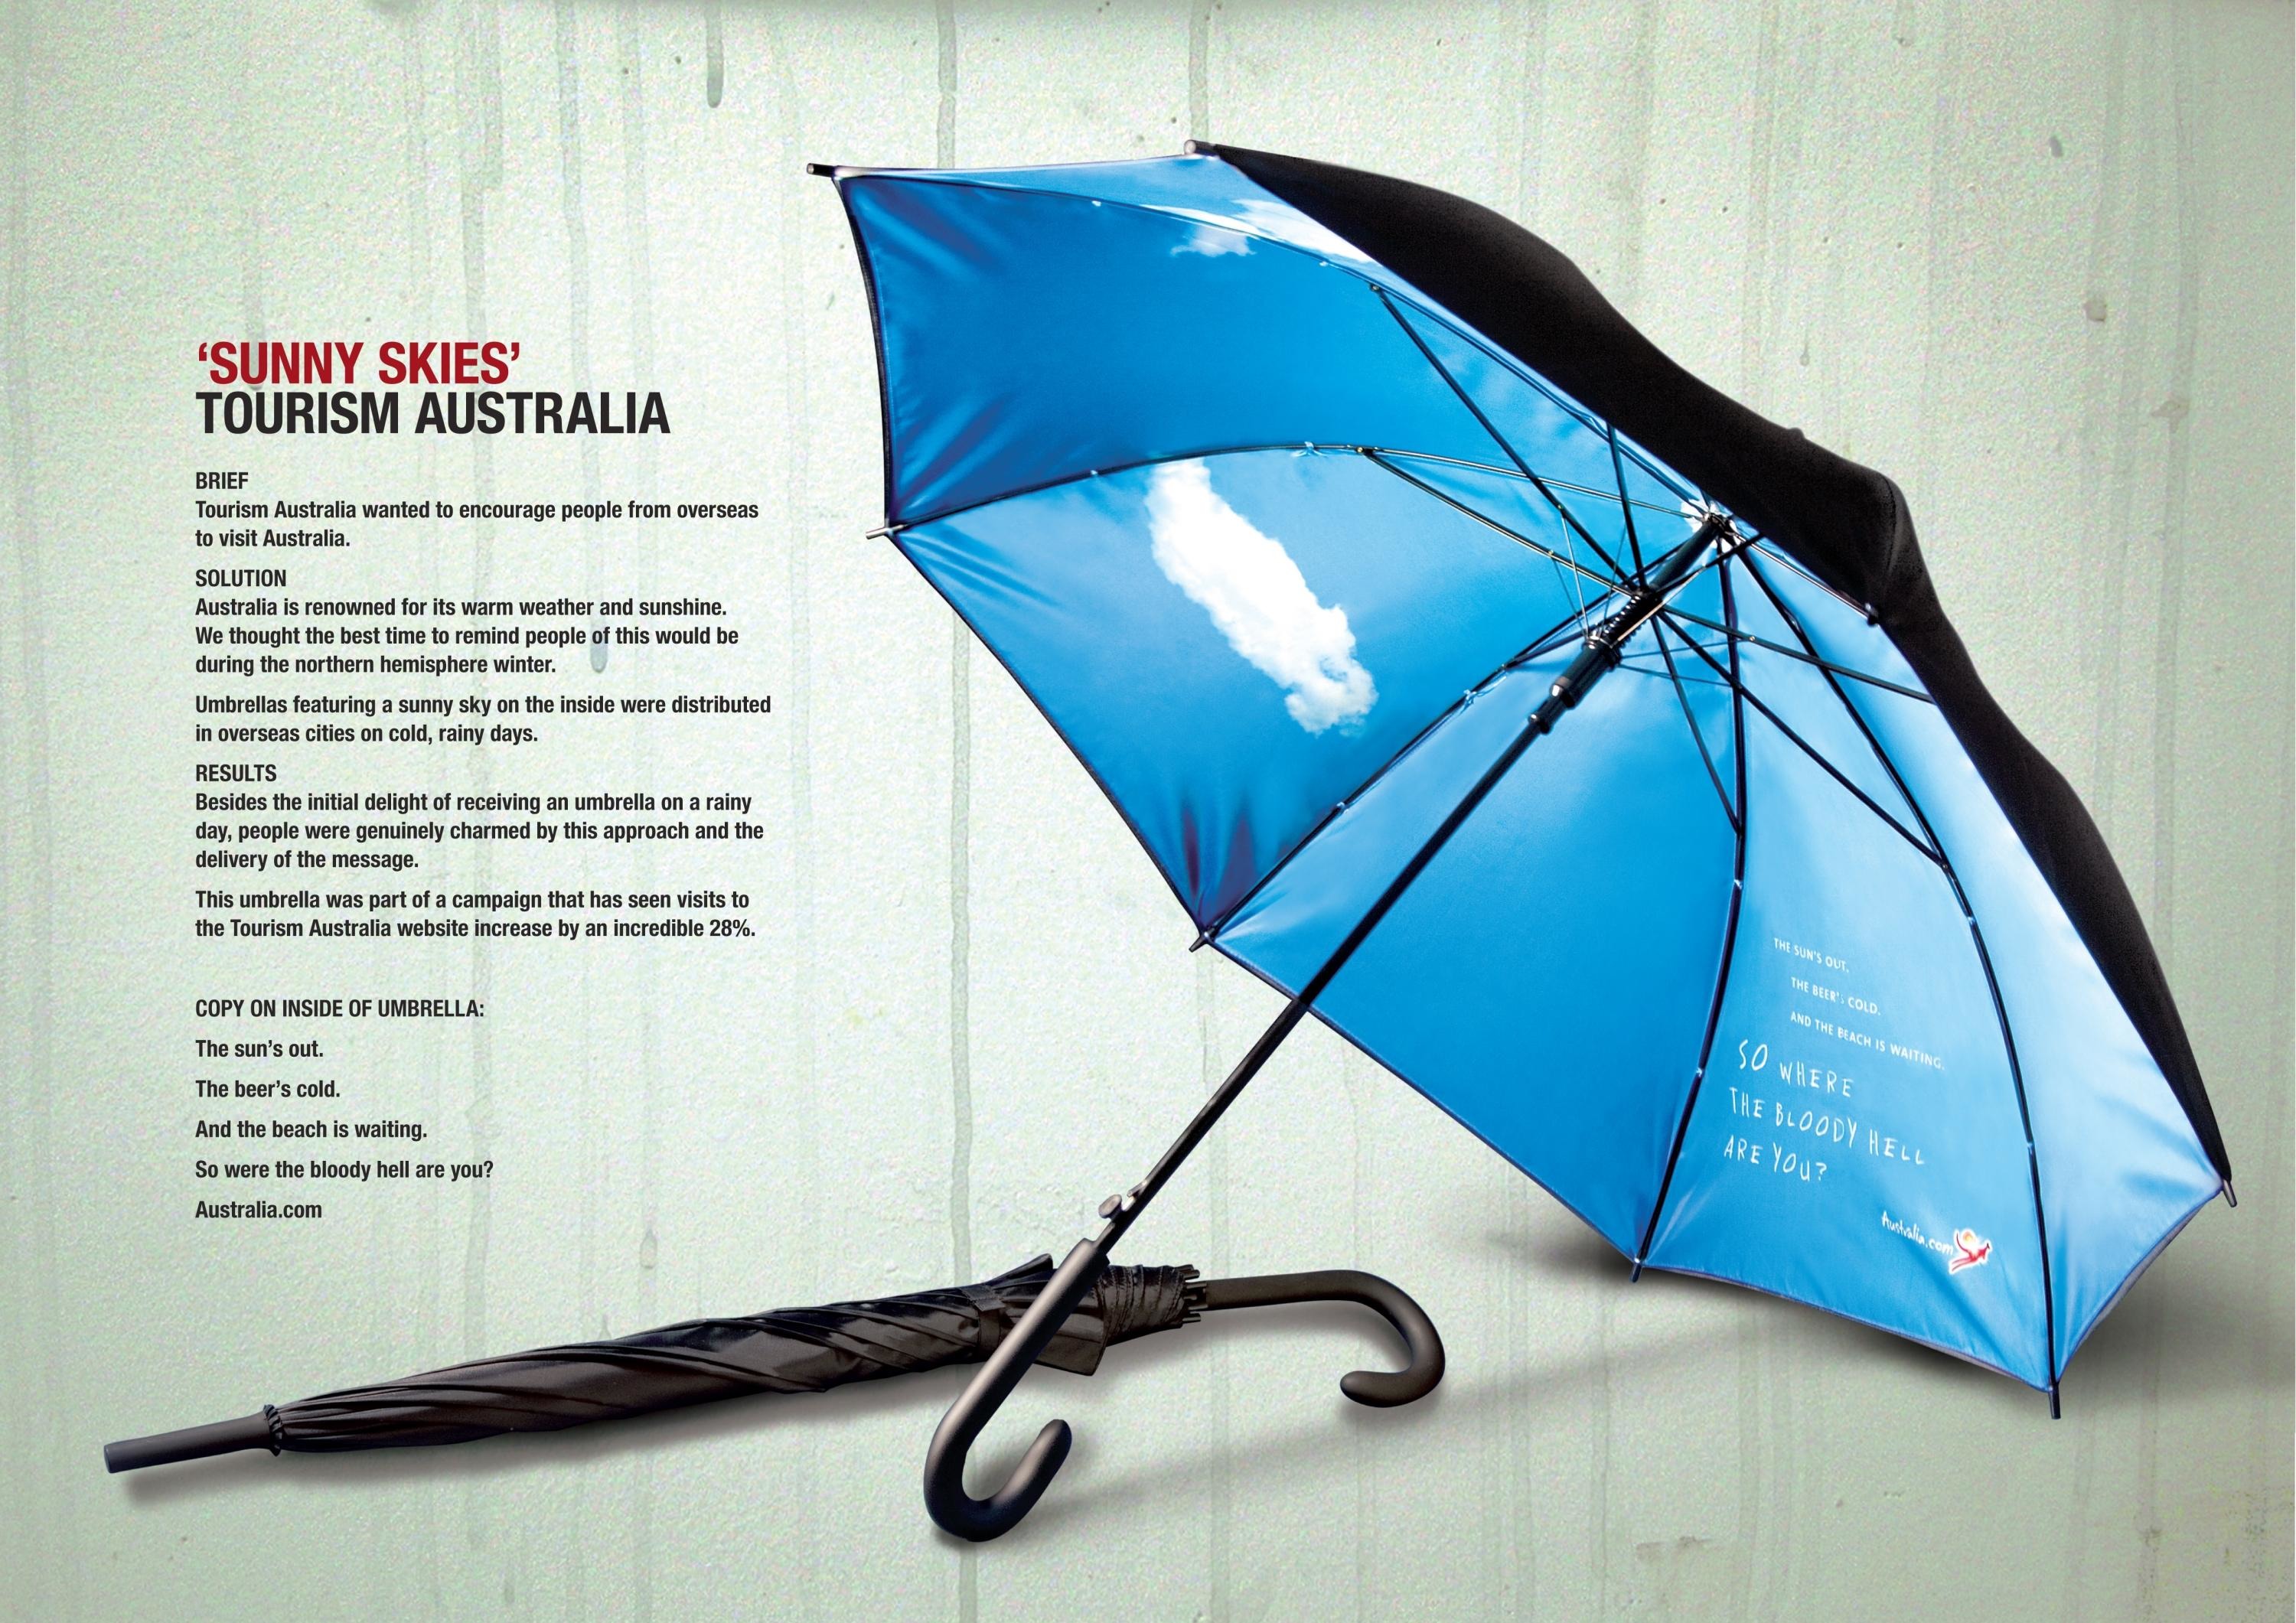 Рекламный зонт